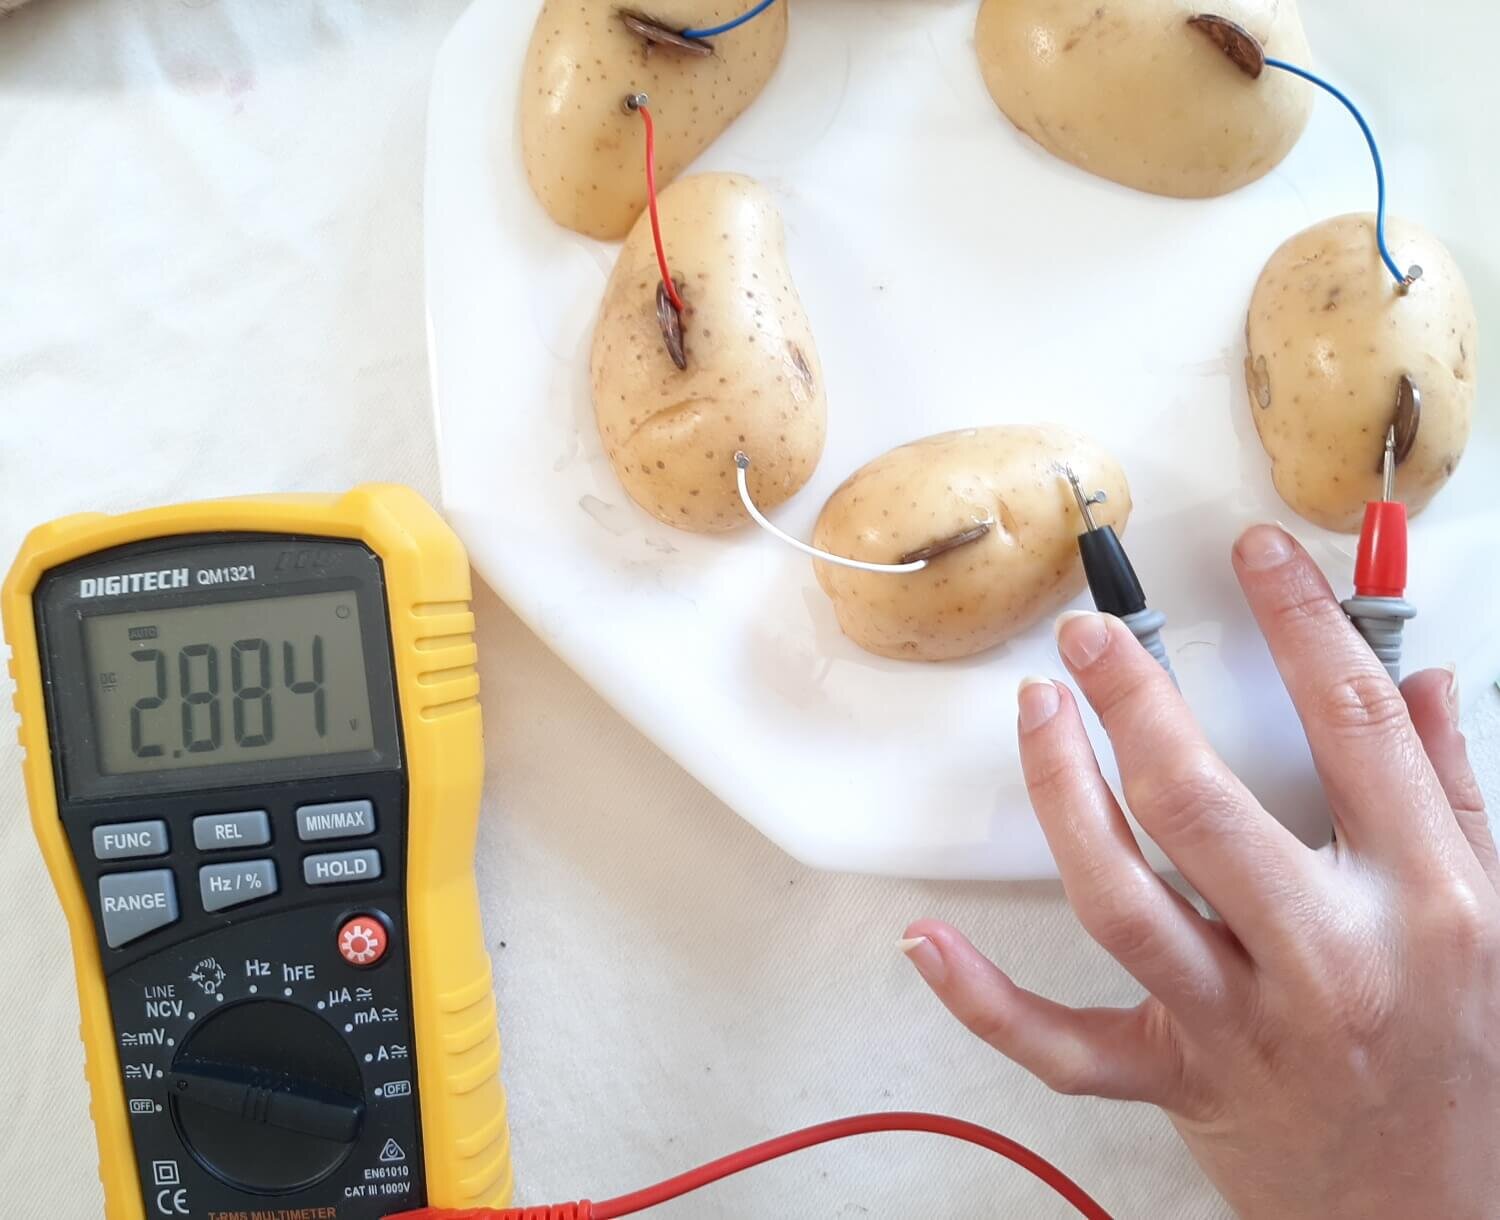 How To Make A Potato Powered Light